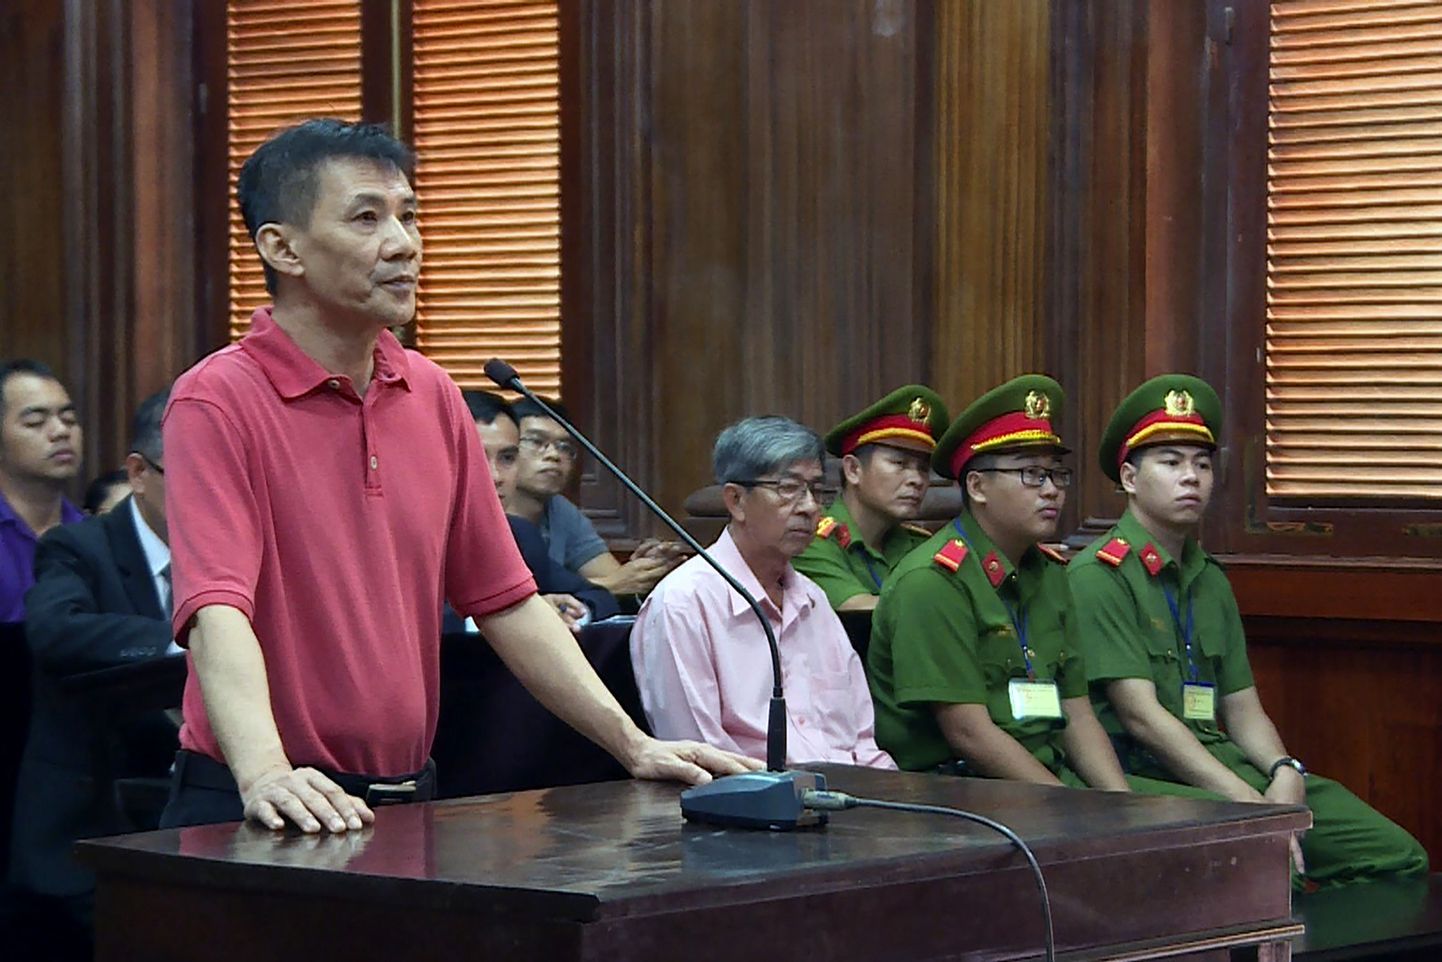 Ameerika Ühendriikide kodanik Michael Nguyen mõisteti Vietnami kohtus riigipöörde katse eest 12 aastaks vangi.